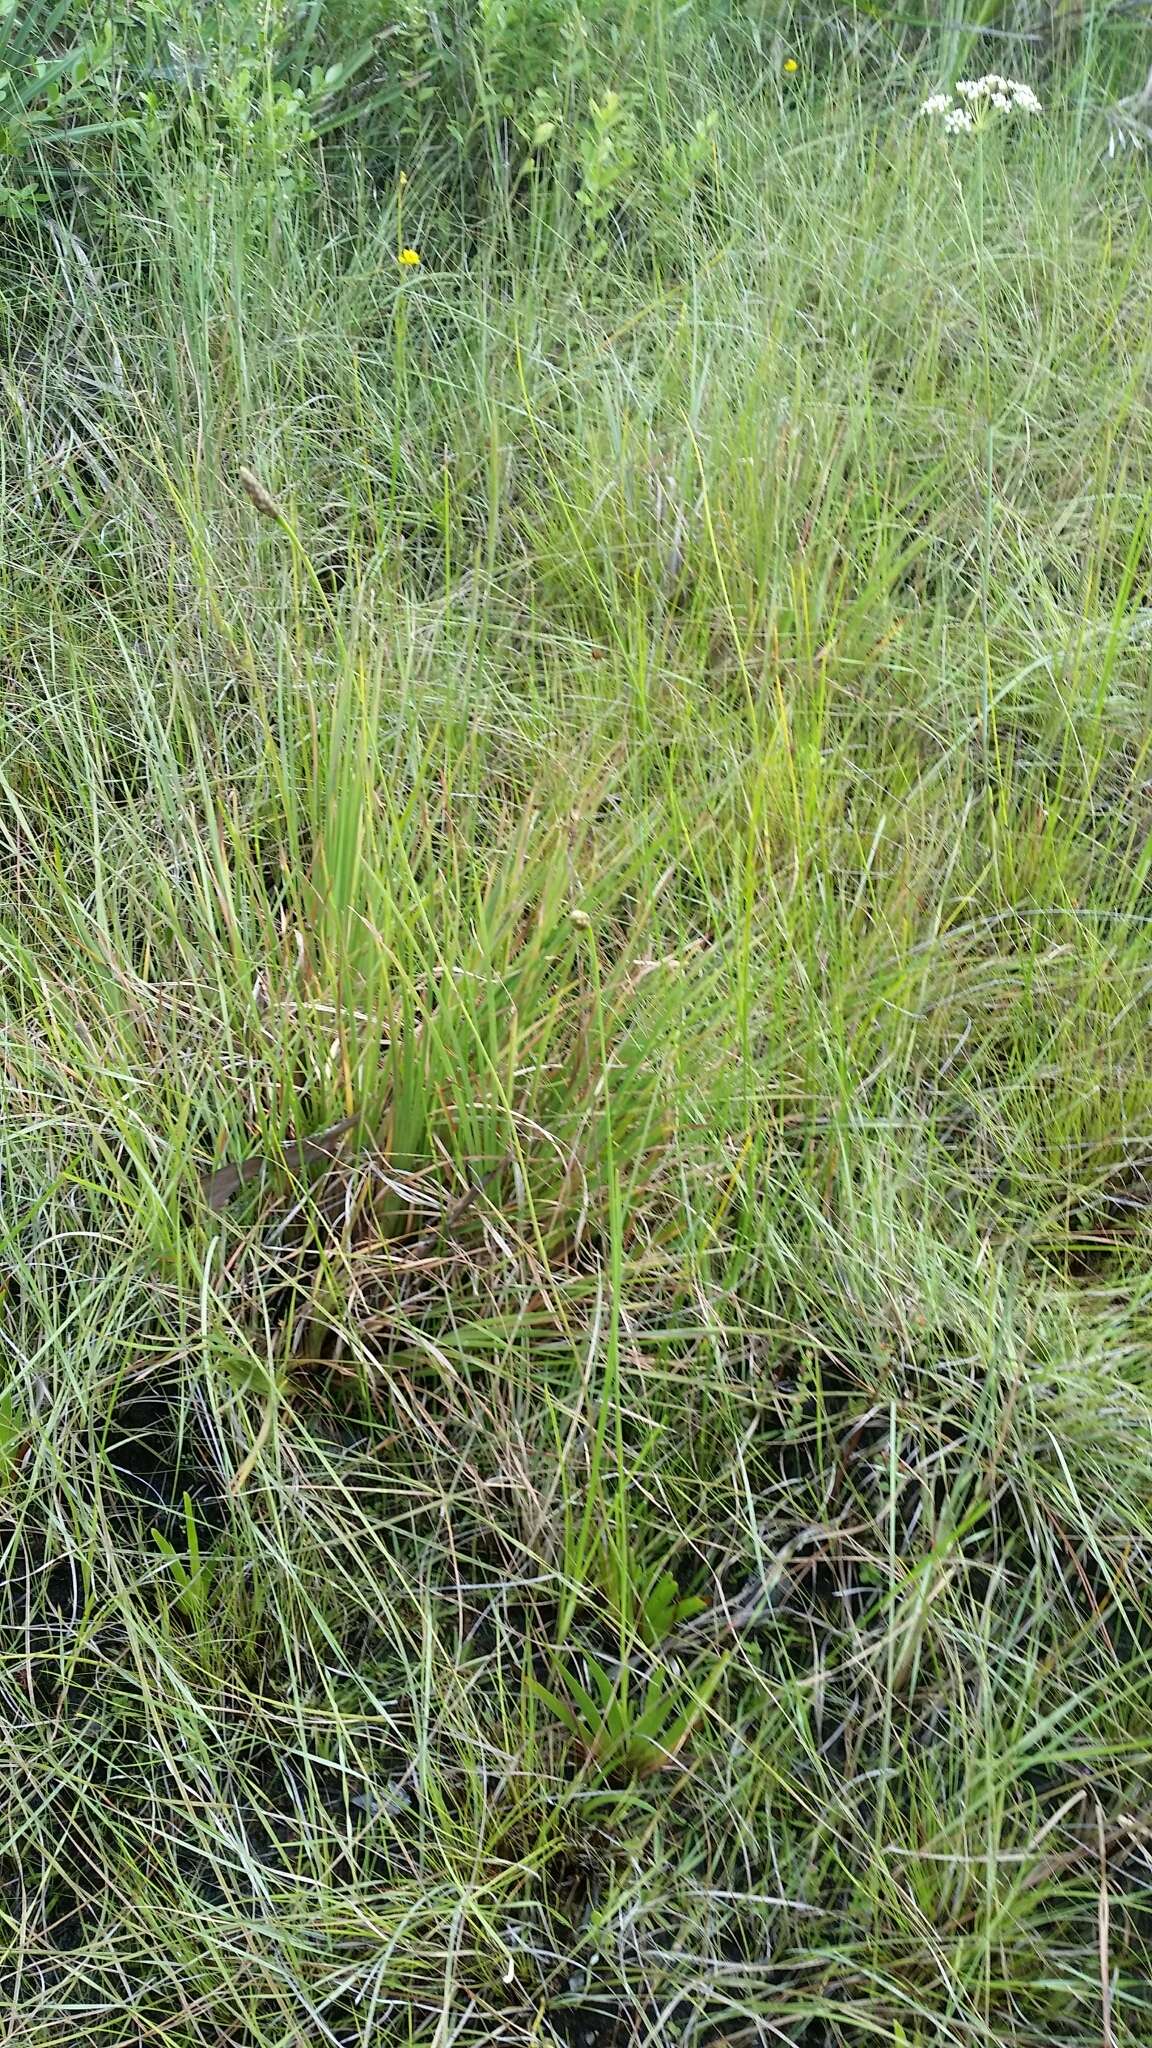 Image of Coastal-Plain Yellow-Eyed-Grass